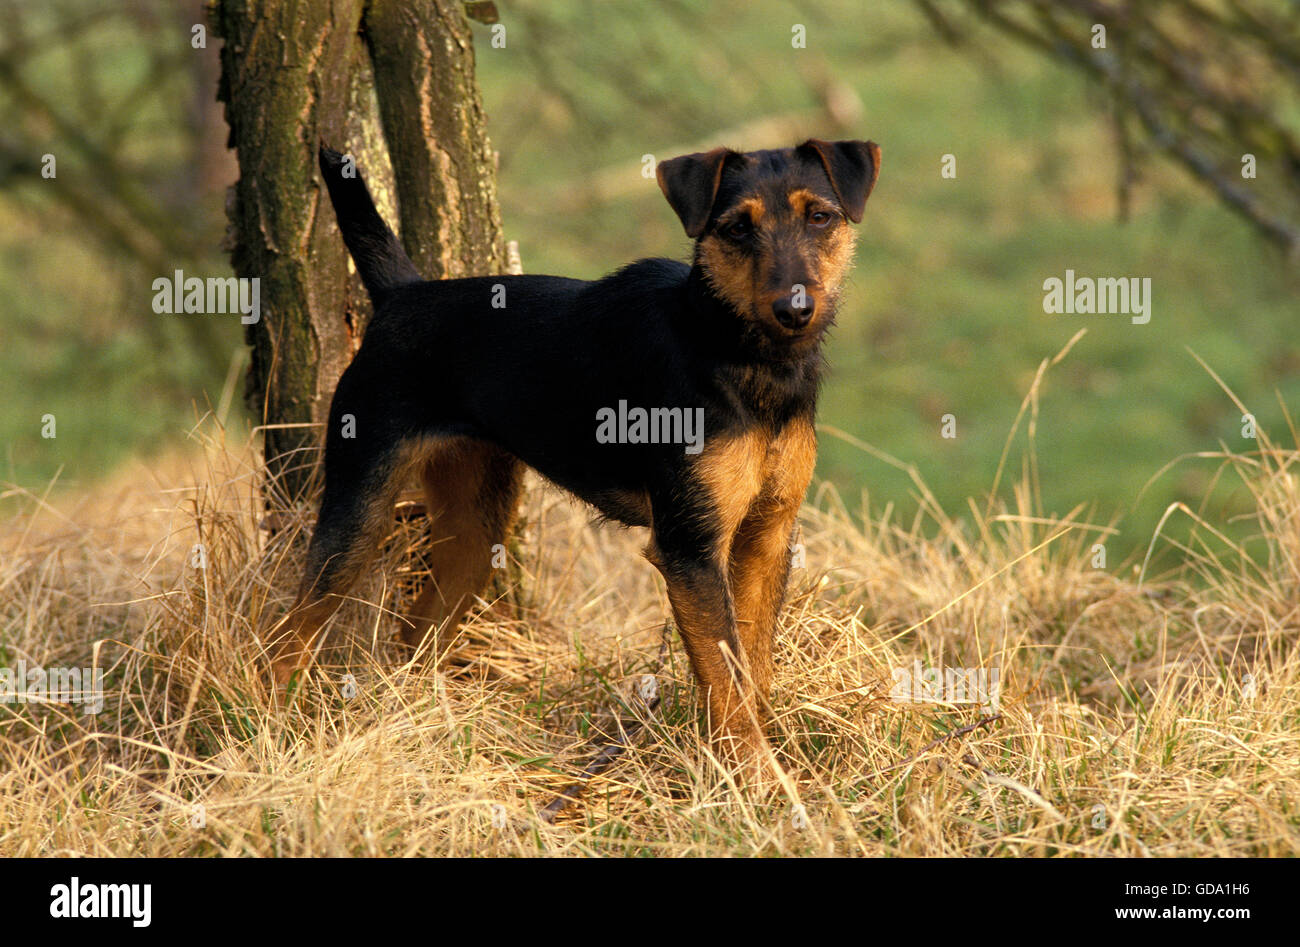 Jagd Terrier ou Terrier de chasse allemand Banque D'Images